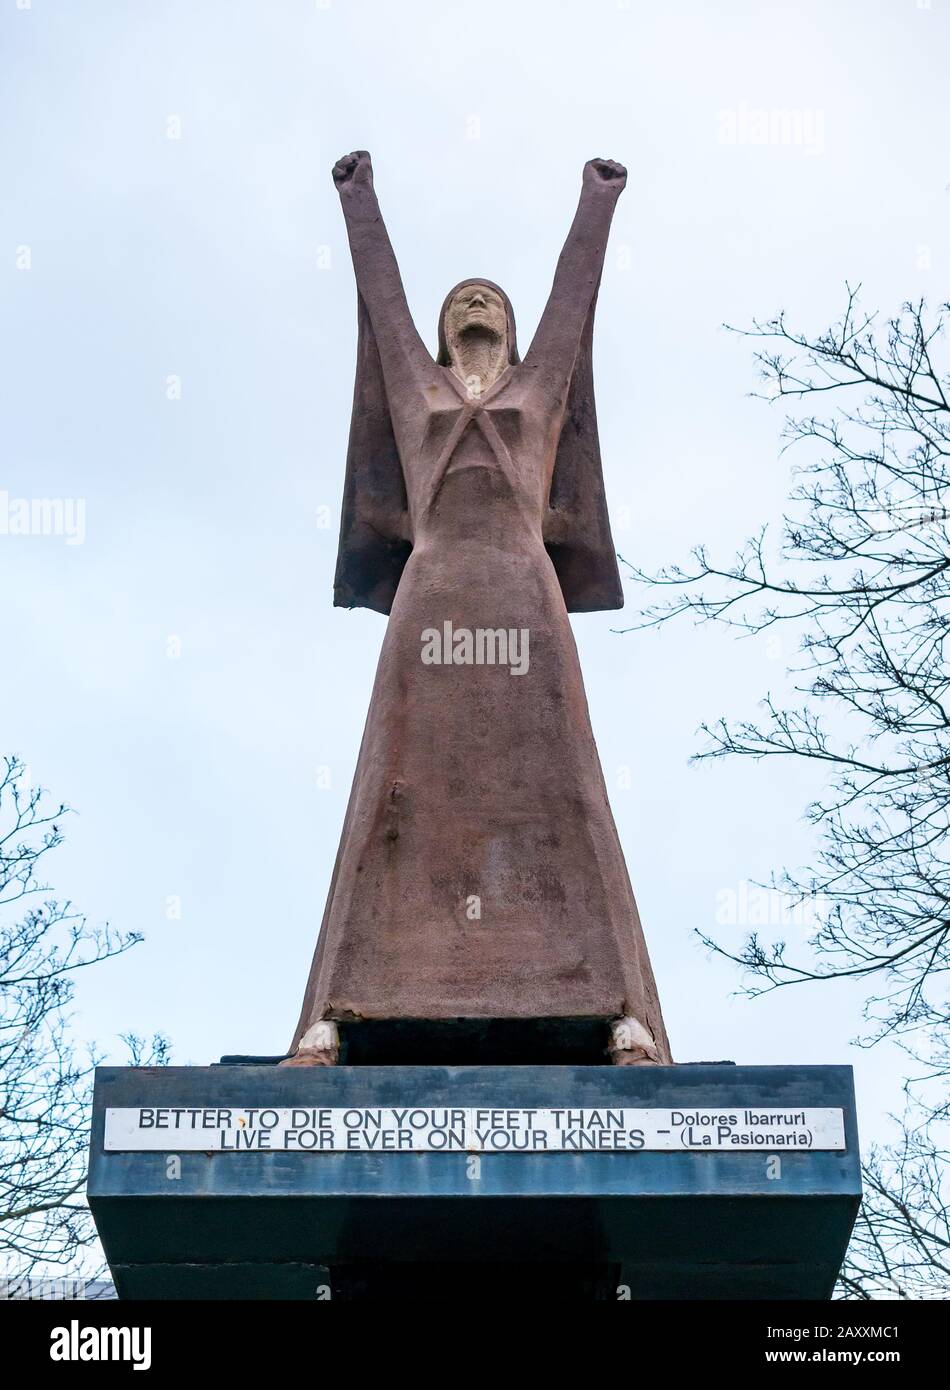 La statua in pietra di la Pasionaria di Dolores Ibarruri, leader del partito comunista spagnolo, Glasgow, Scozia, Regno Unito Foto Stock